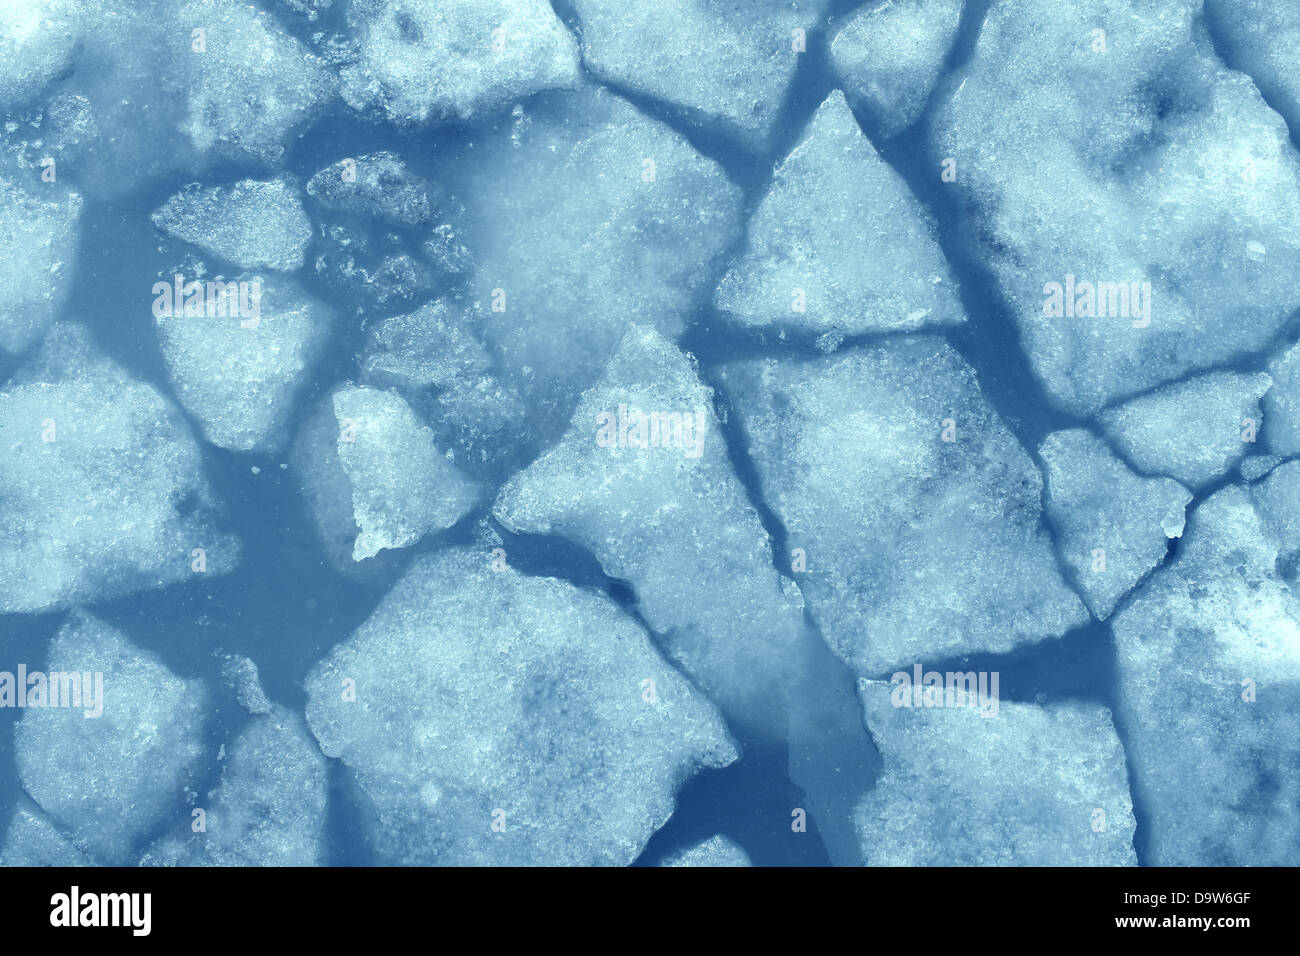 Gebrochene Eis Hintergrund als ein Konzept der blauen eisigen Kälte wie in der Arktis Polarlandschaft mit Stücken von unter Null gefrorenes Wasser, kühlen gekühlten Umgebung darstellt. Stockfoto